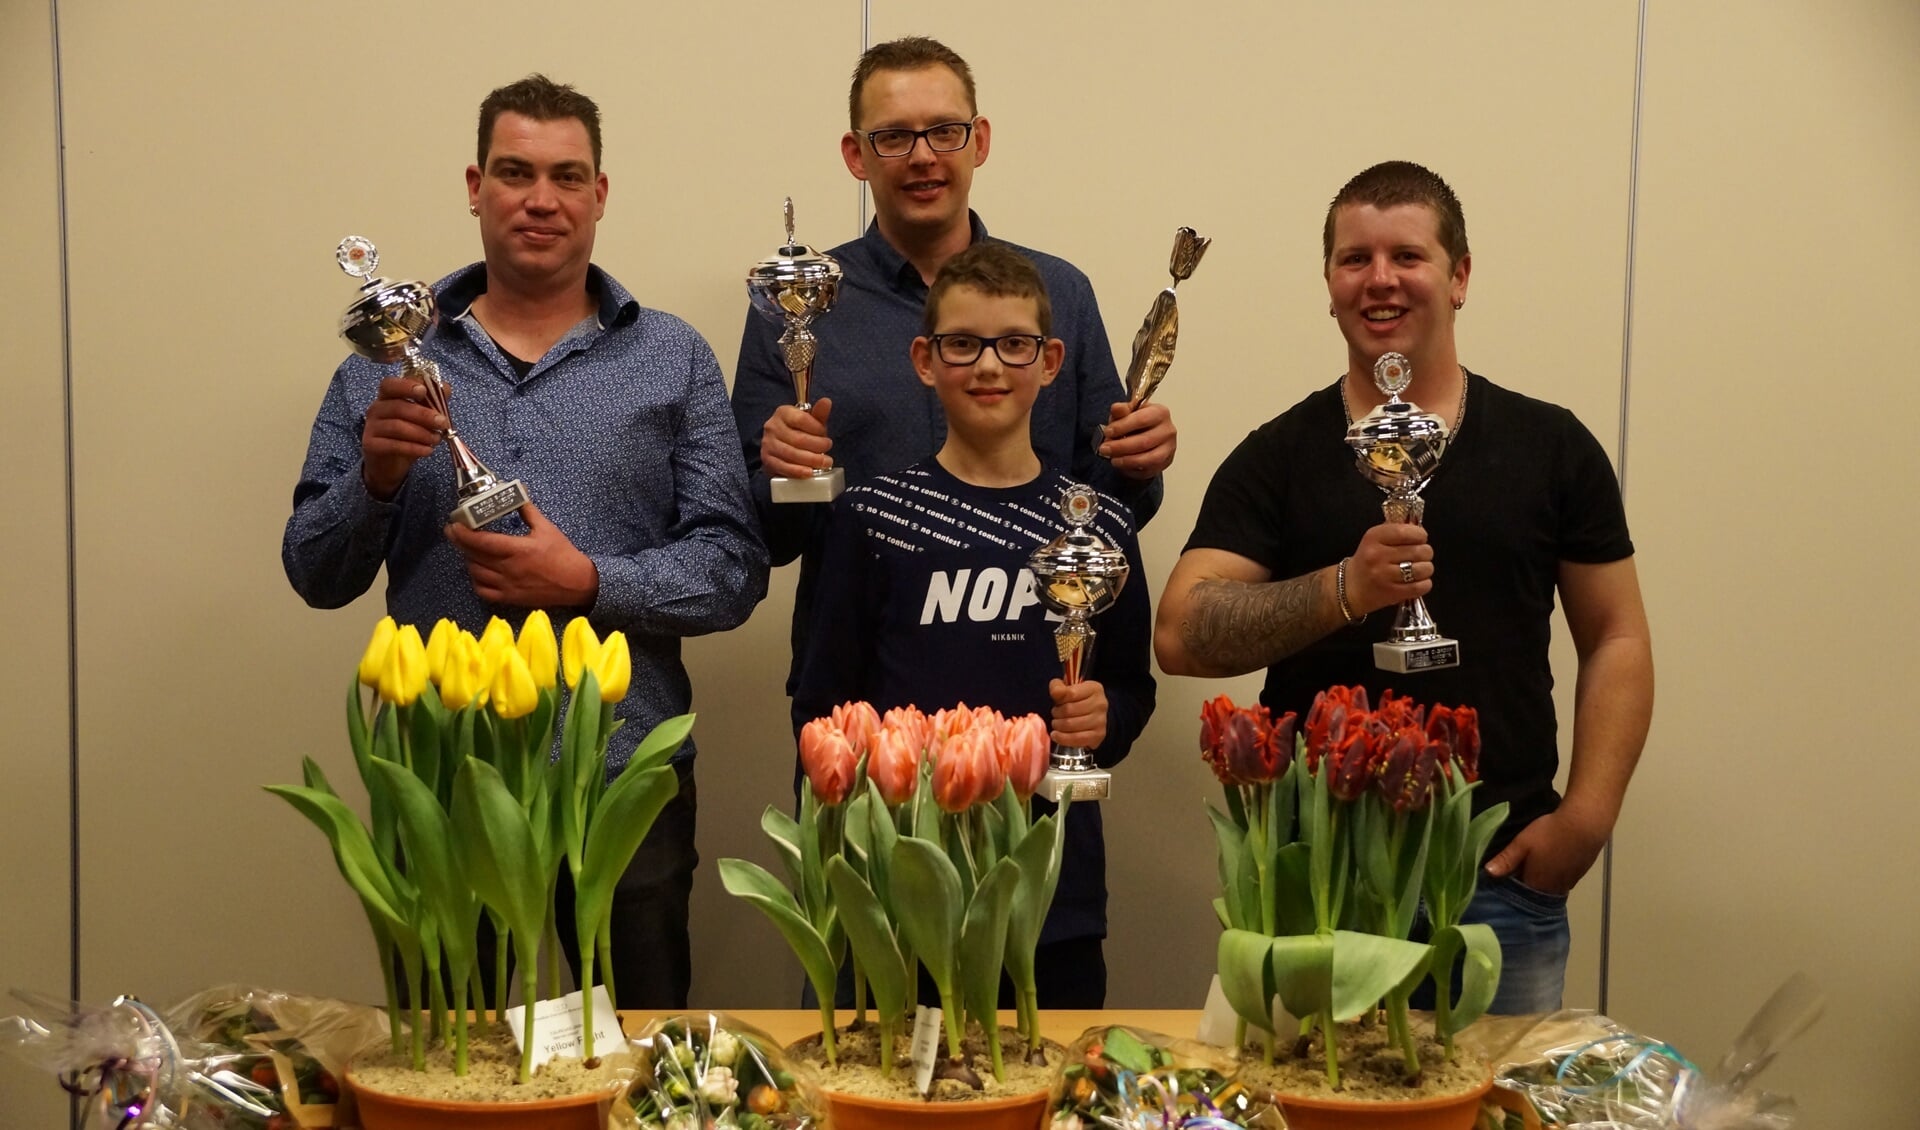 De vier prijswinnaars; Maurits Koeman, Ronald Mes, Lars Mes, Roel Kaagman.